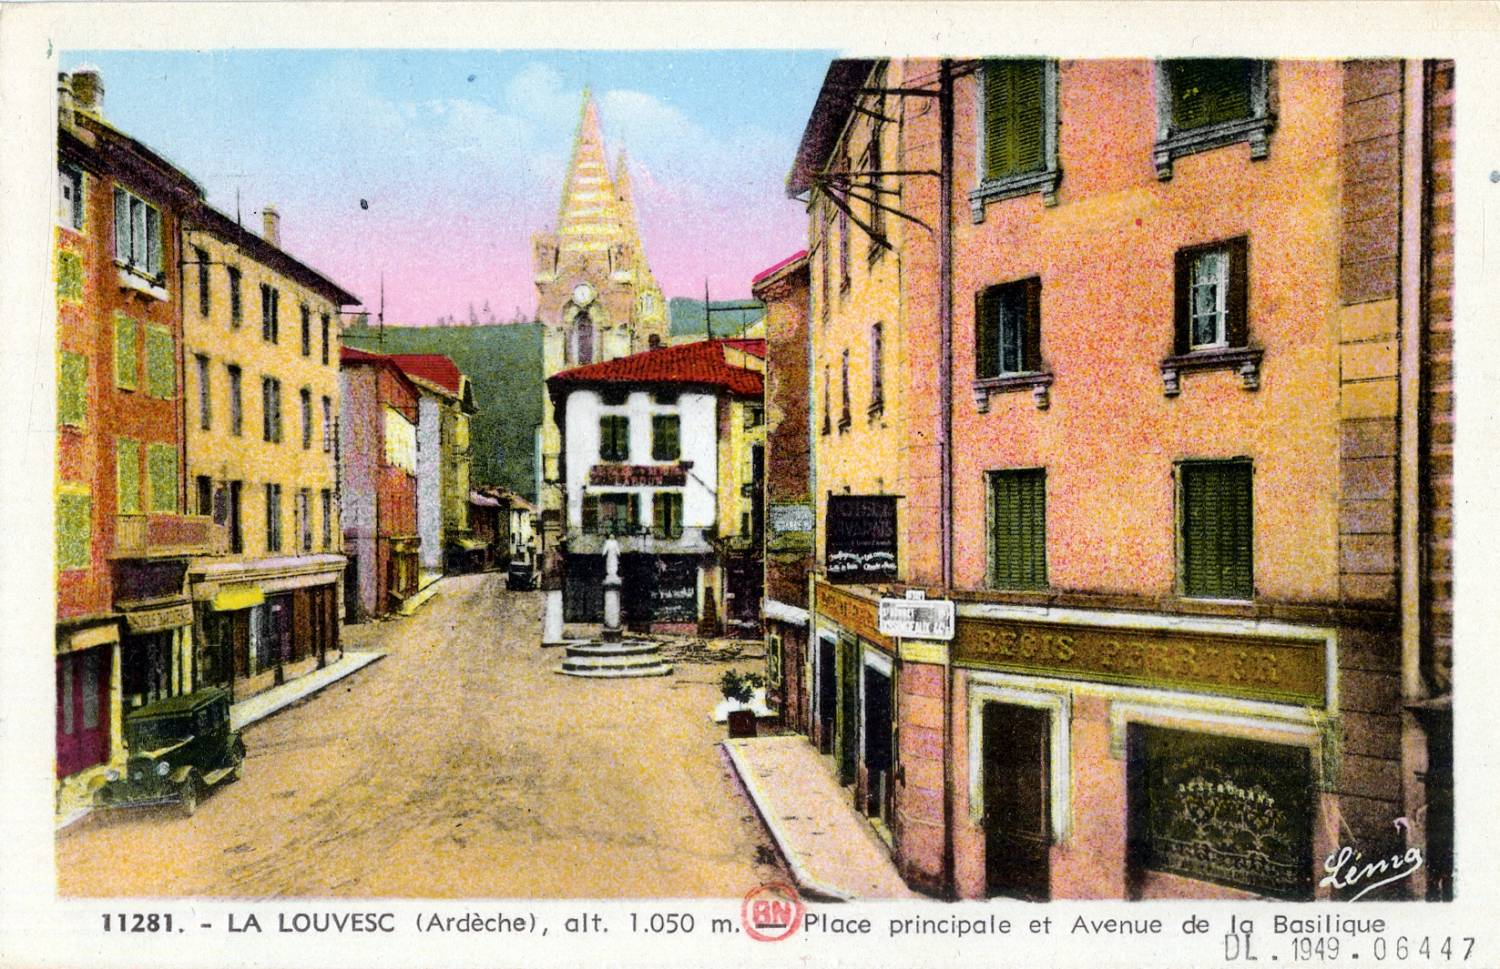 La Louvesc (Ardèche), alt. 1050 m. : Place principale et avenue de la Basilique.